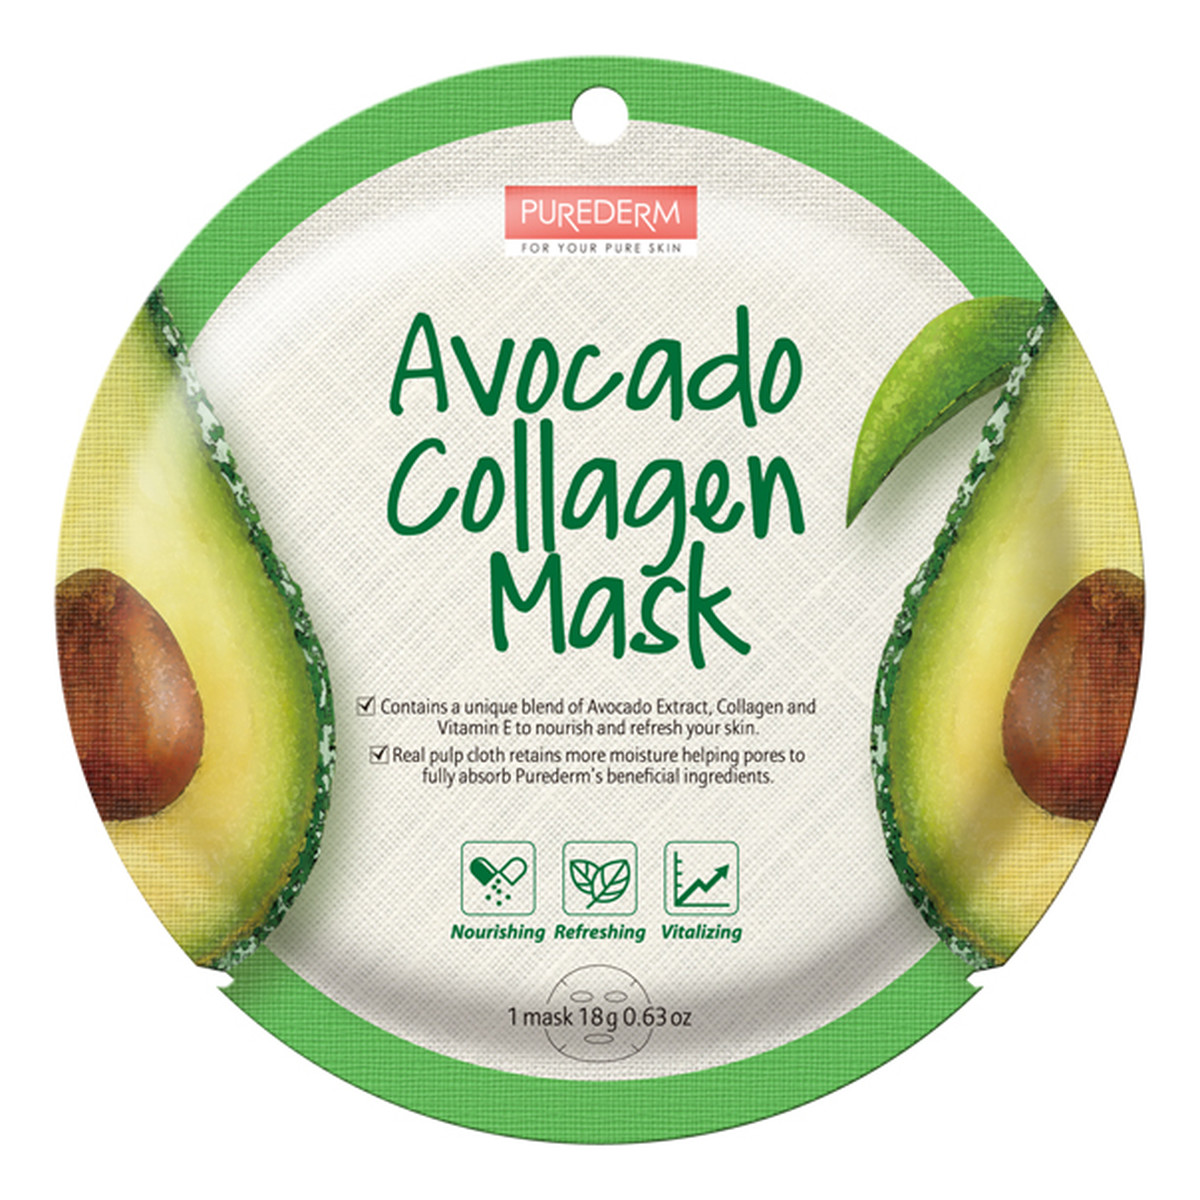 Purederm Avocado Collagen Mask maseczka kolagenowa w płacie Awokado 18g